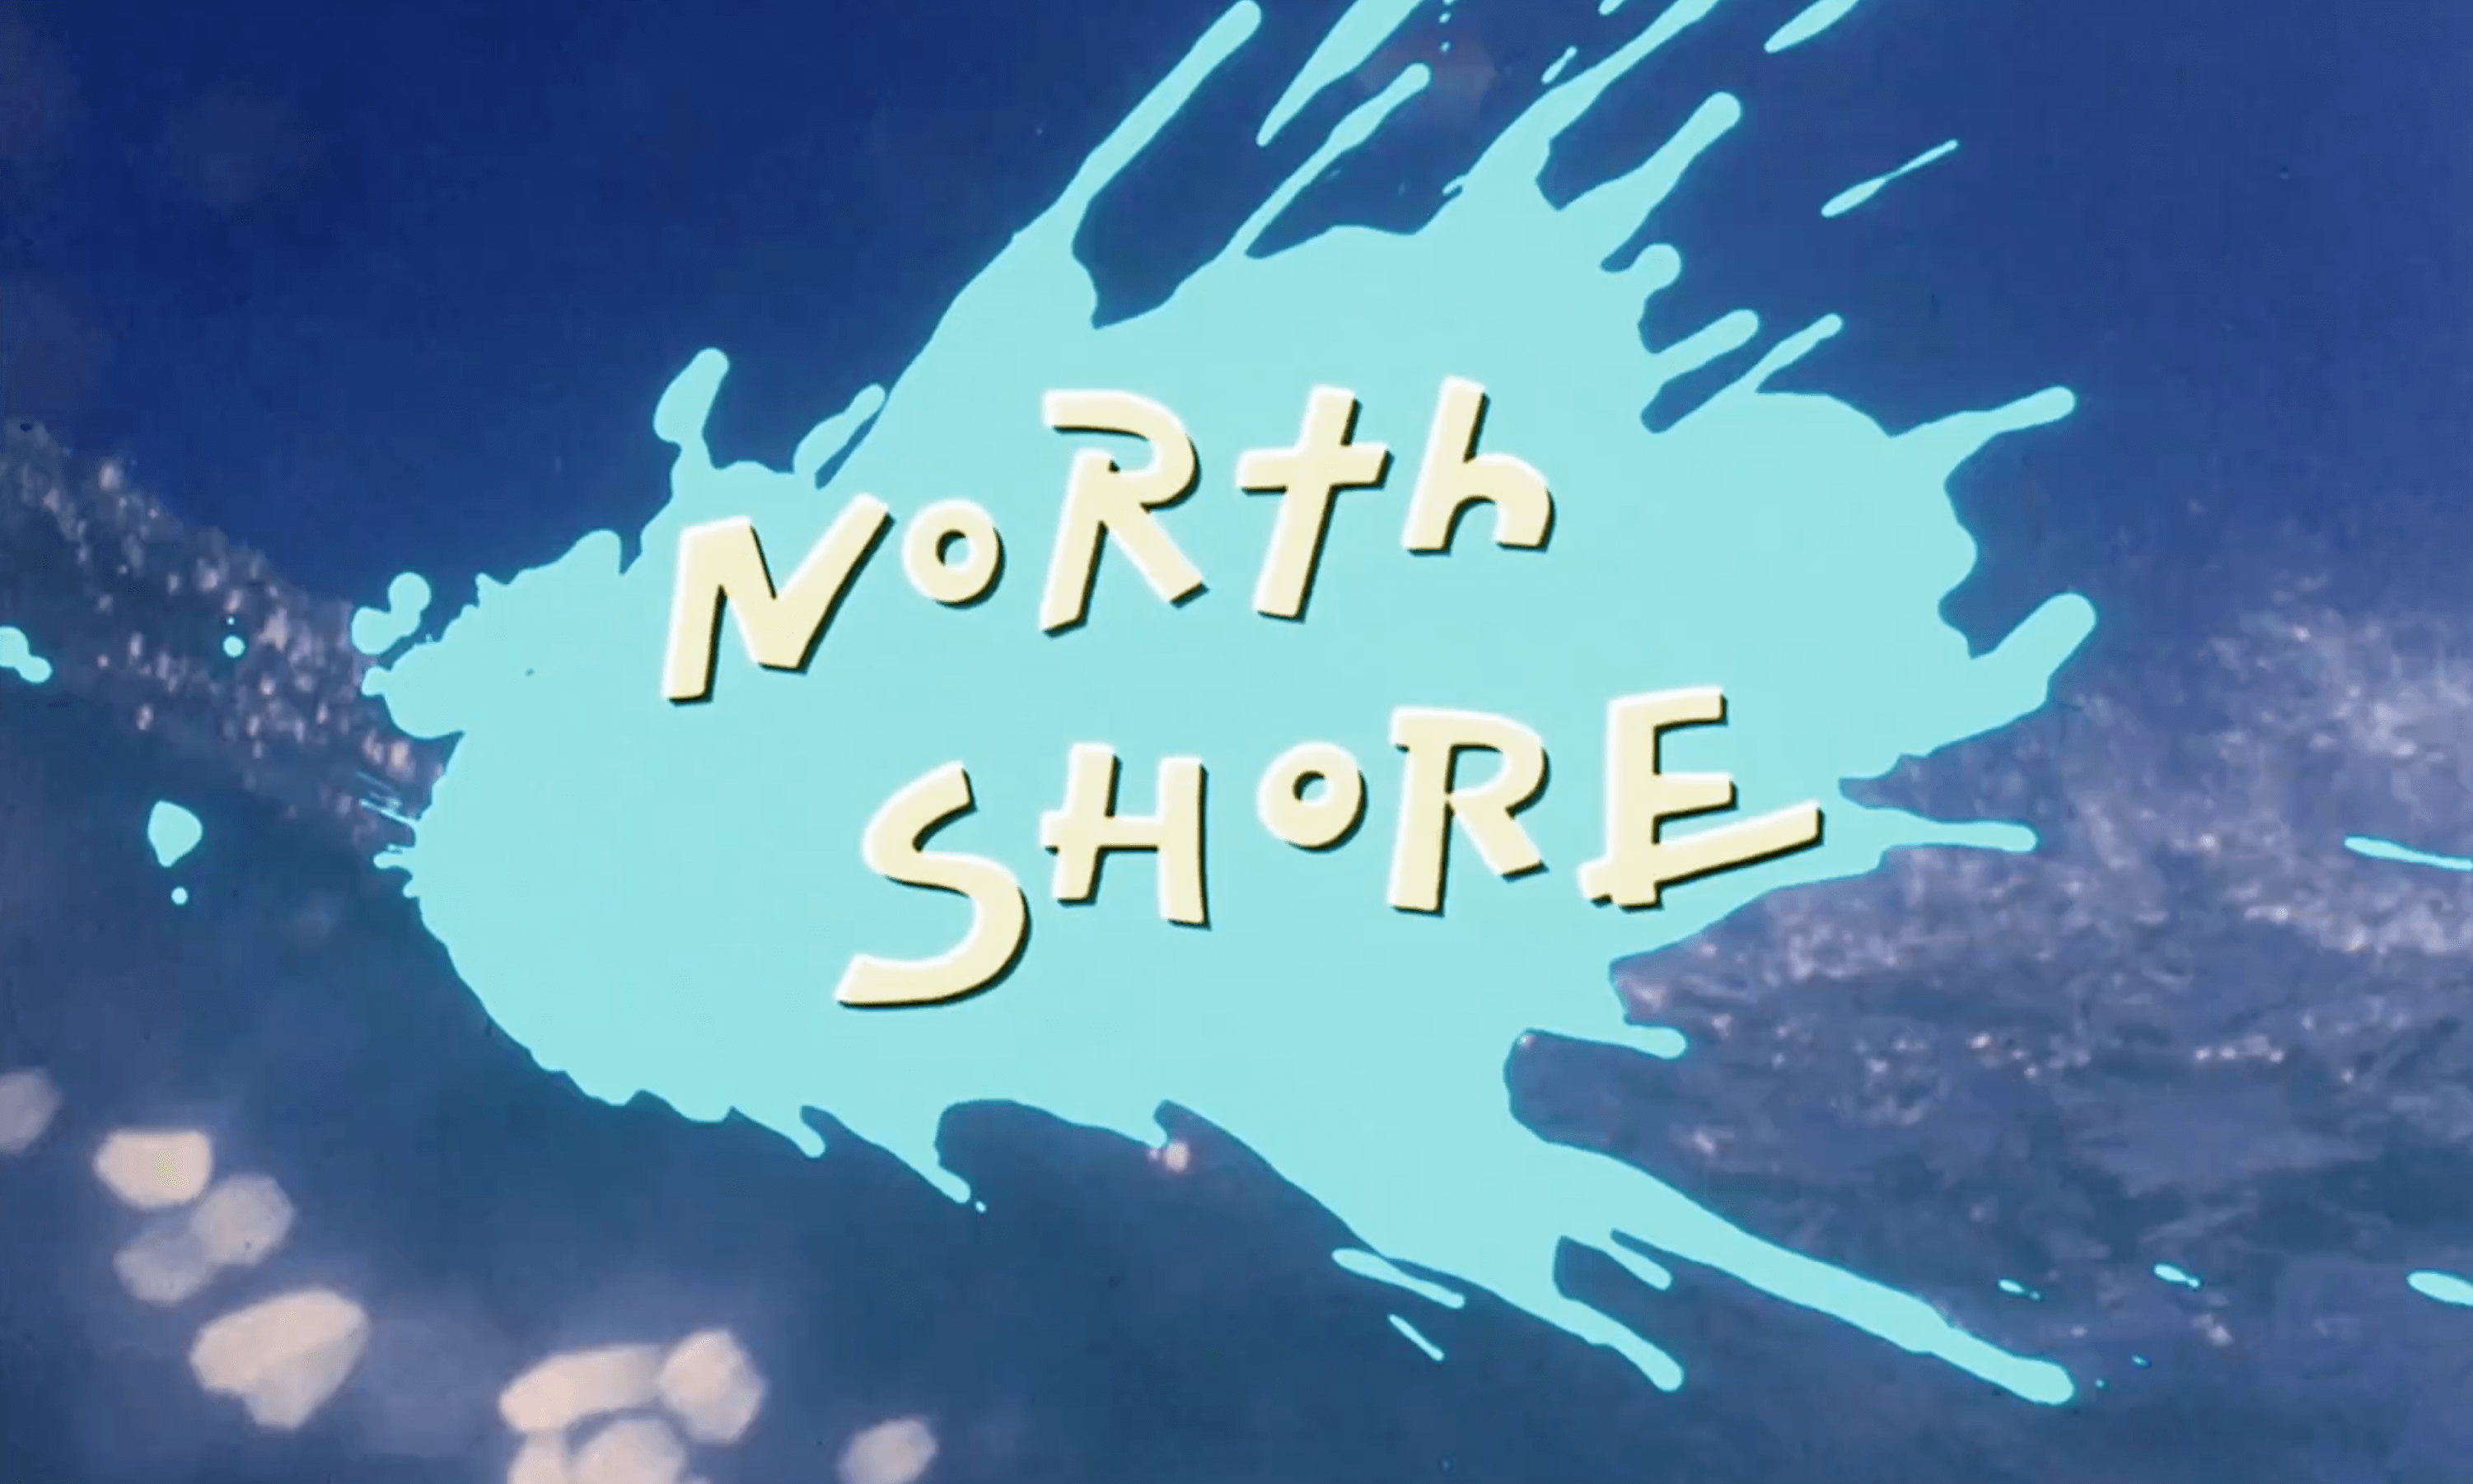 North Shore (1987. Я видел берега песня